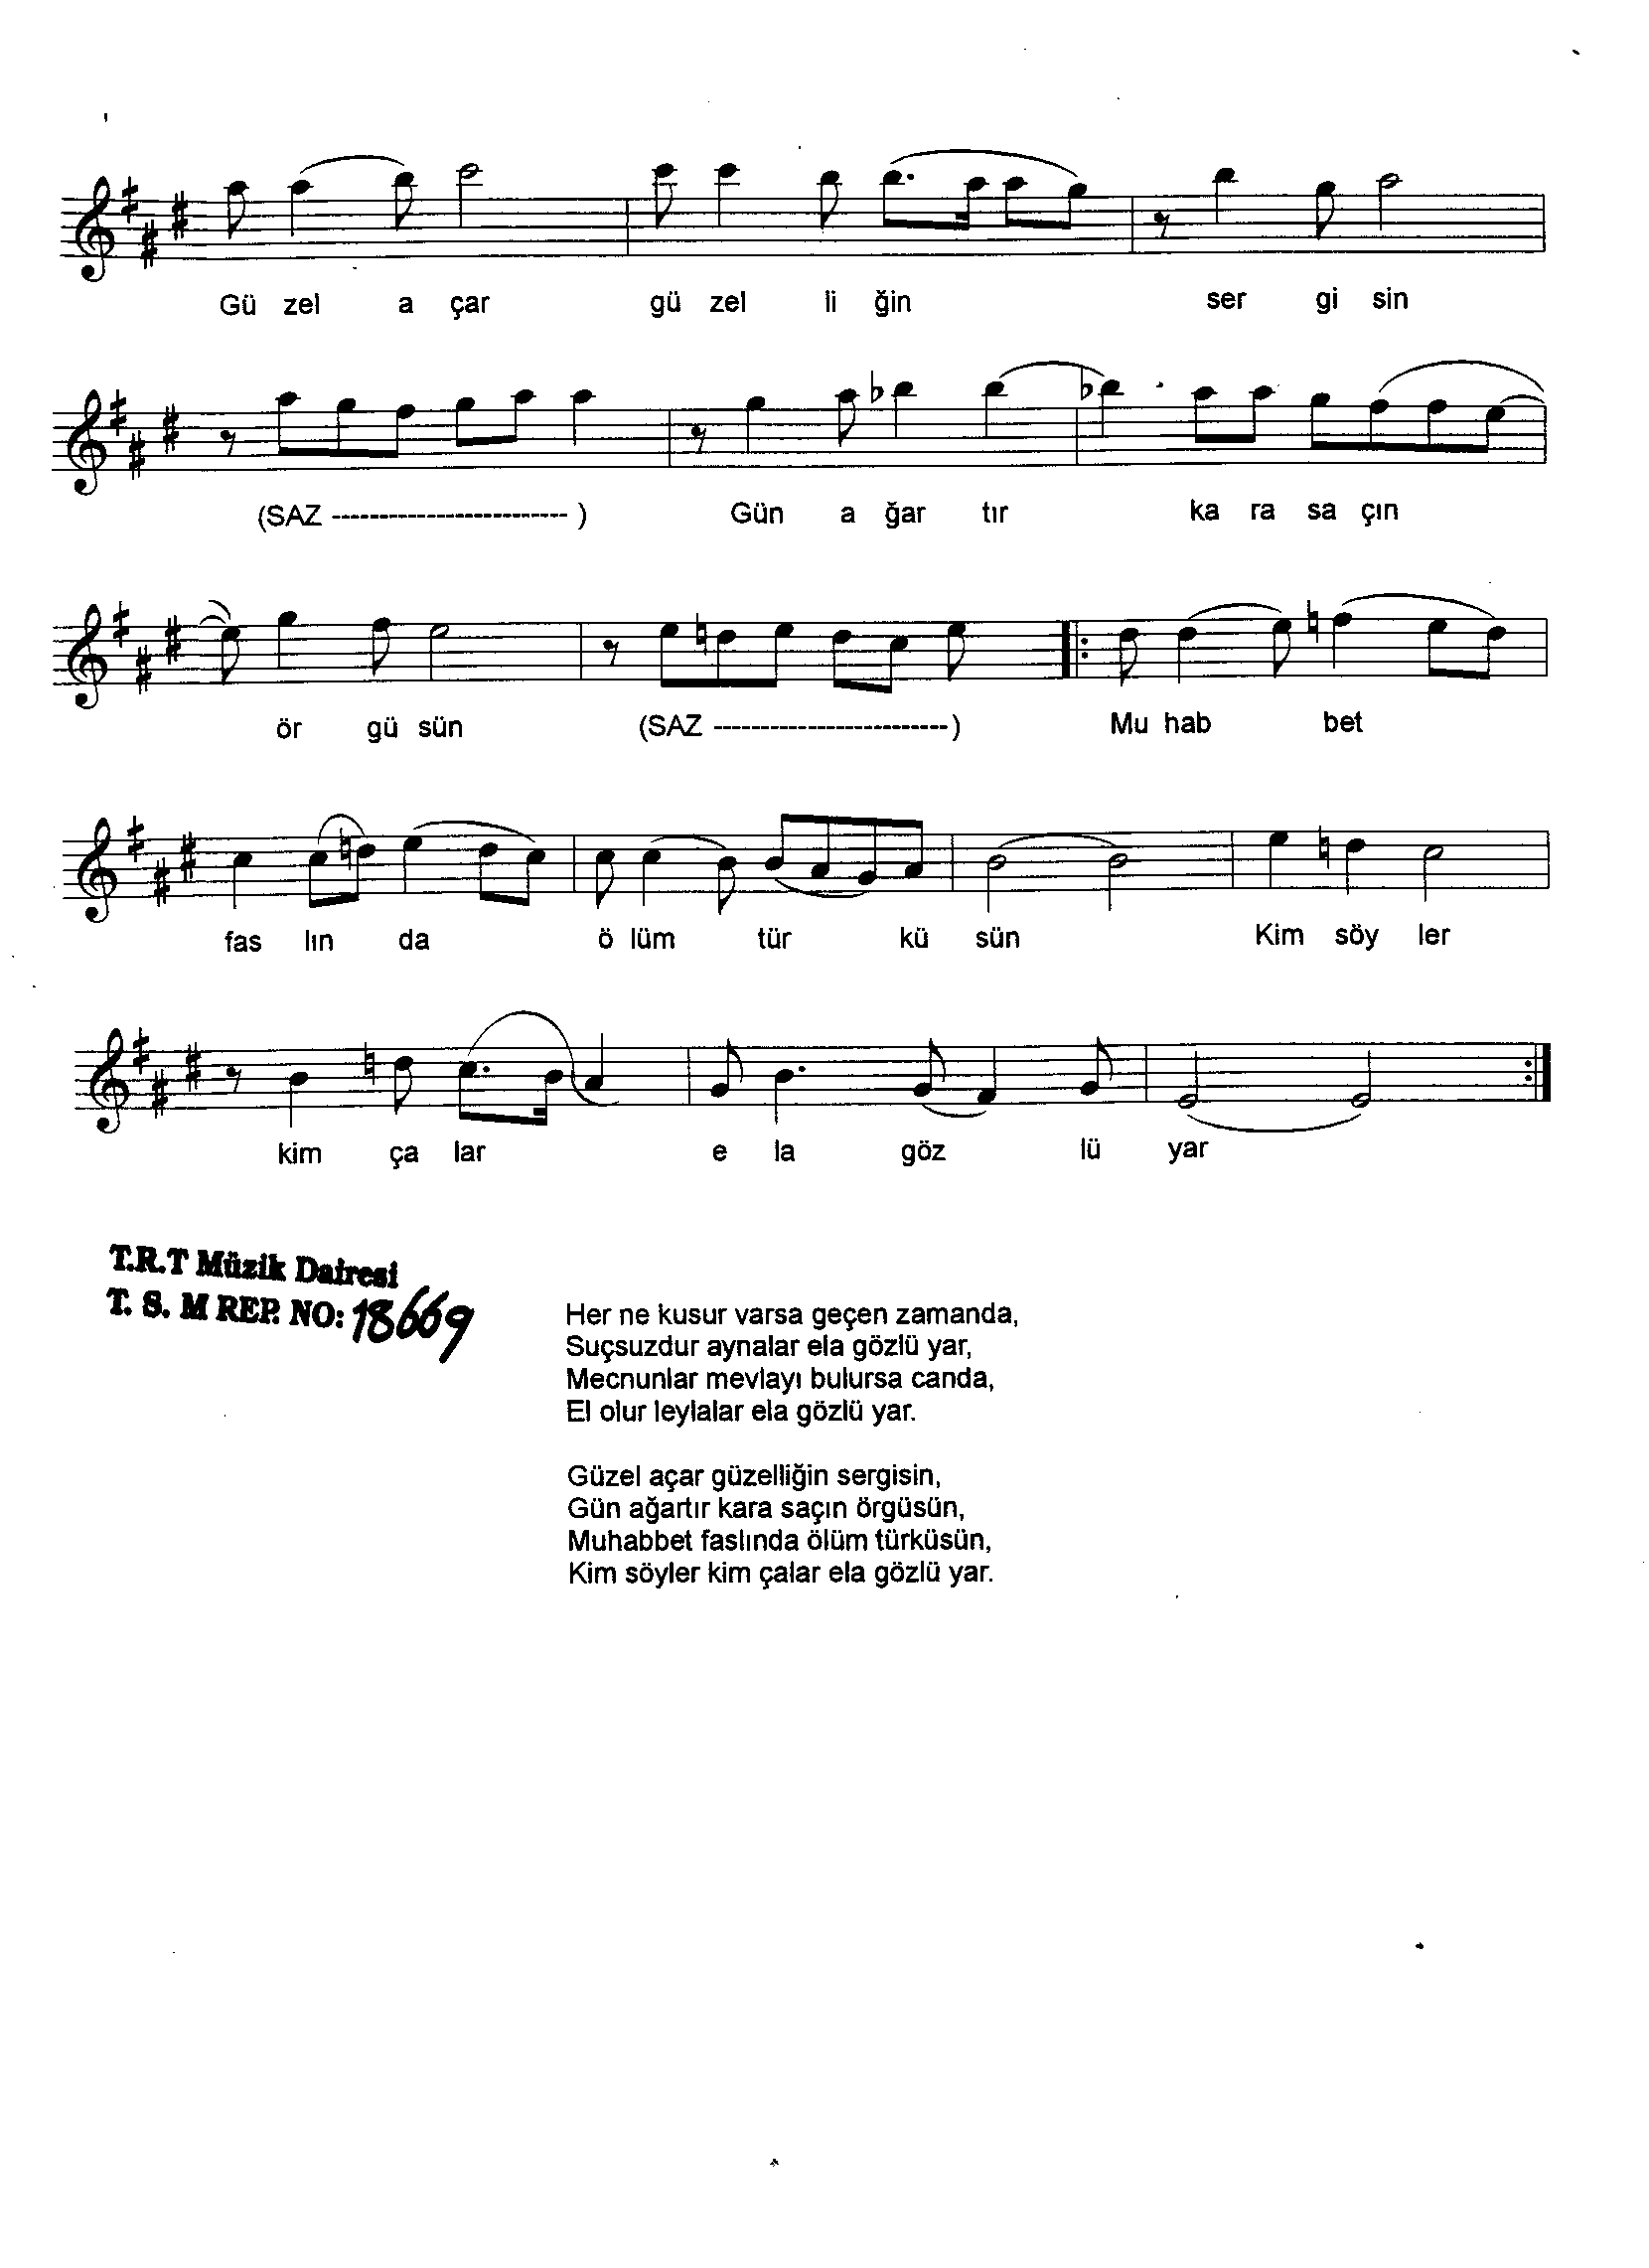 Sûz-i Dil - Şarkı - Atıf Baştuğ - Sayfa 2